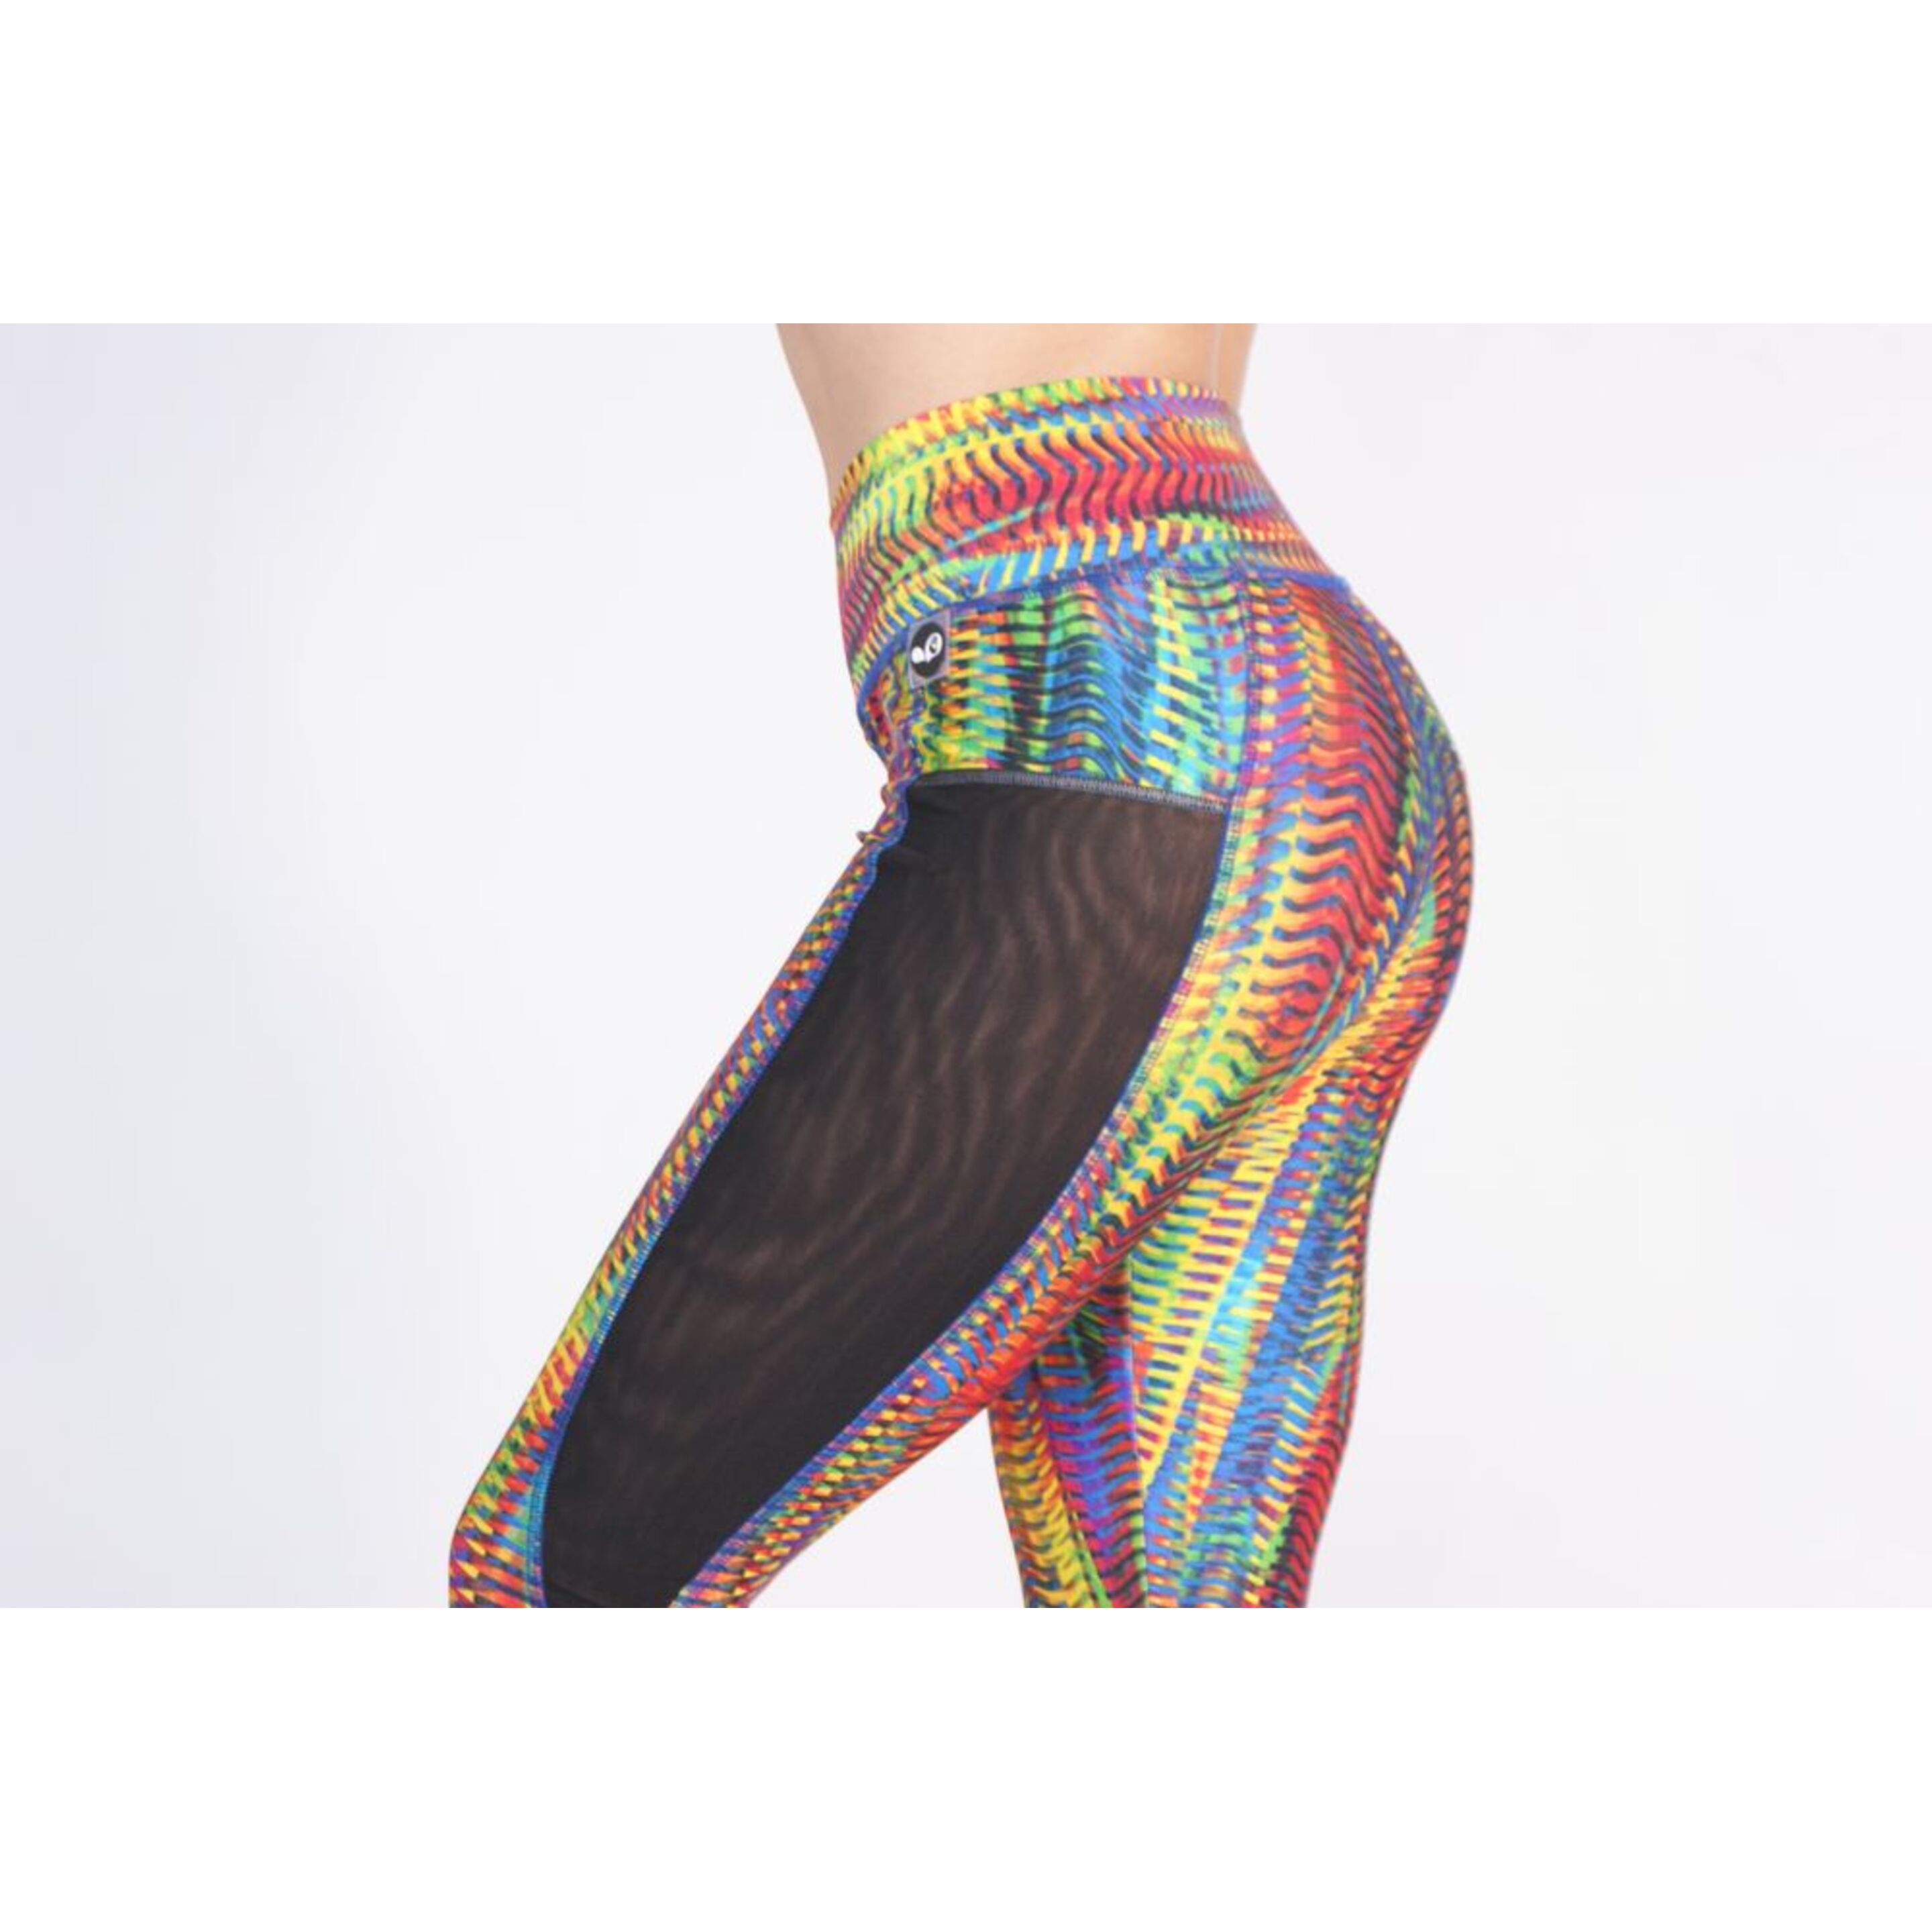 Legging Deportivos Mujer Multicolor Metalizado - multicolor  MKP